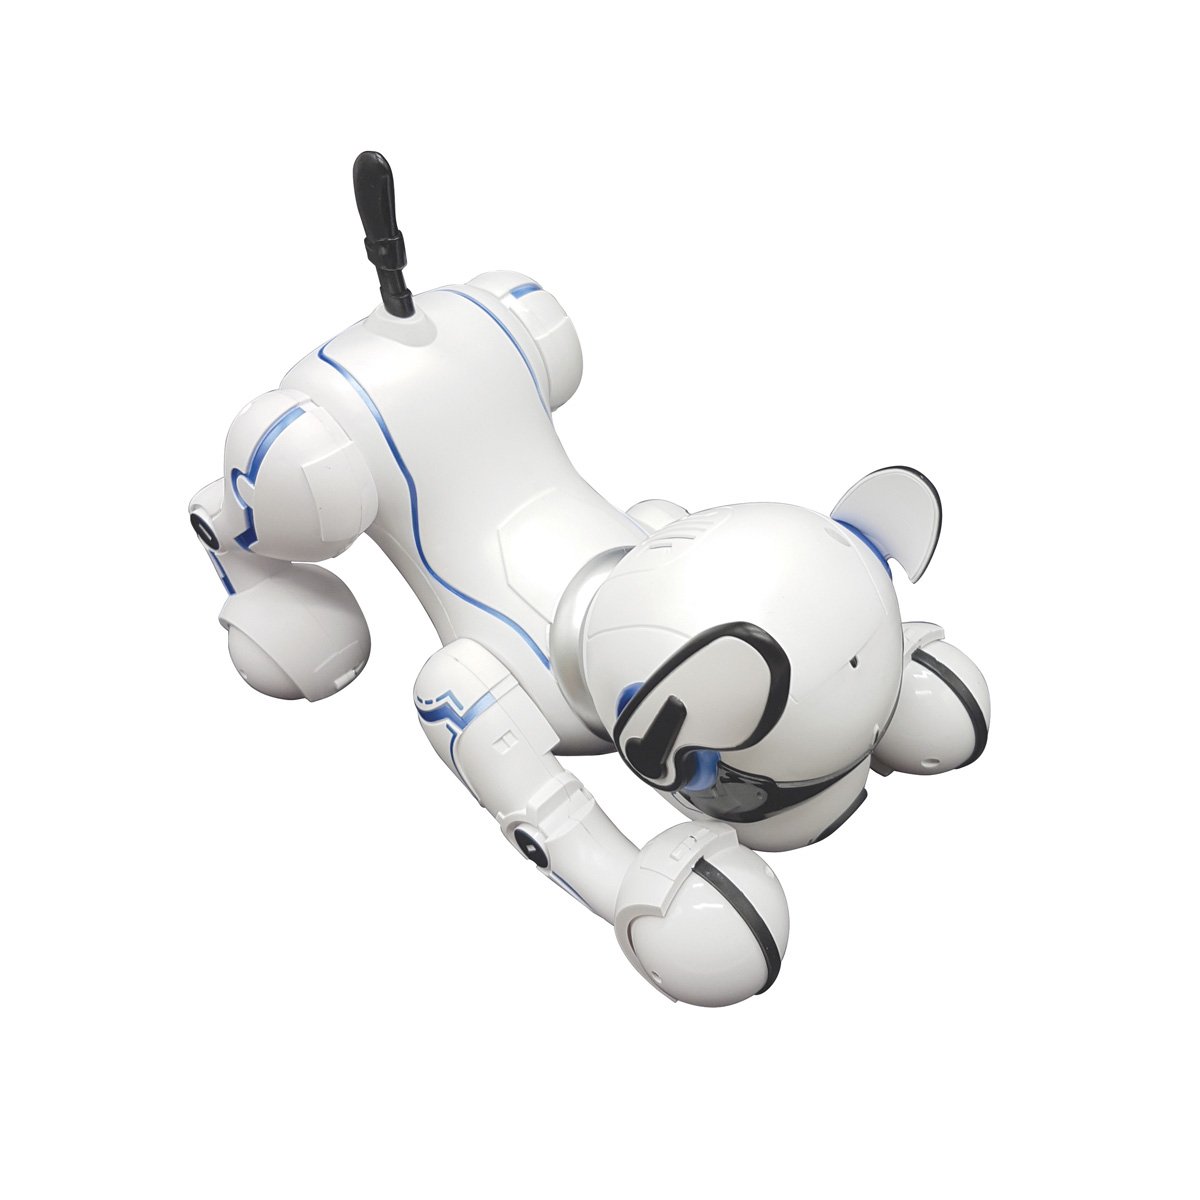 LEXIBOOK POWER PUPPY Programmierbarer Lernroboter, Schwarz/Weiß Roboterhund